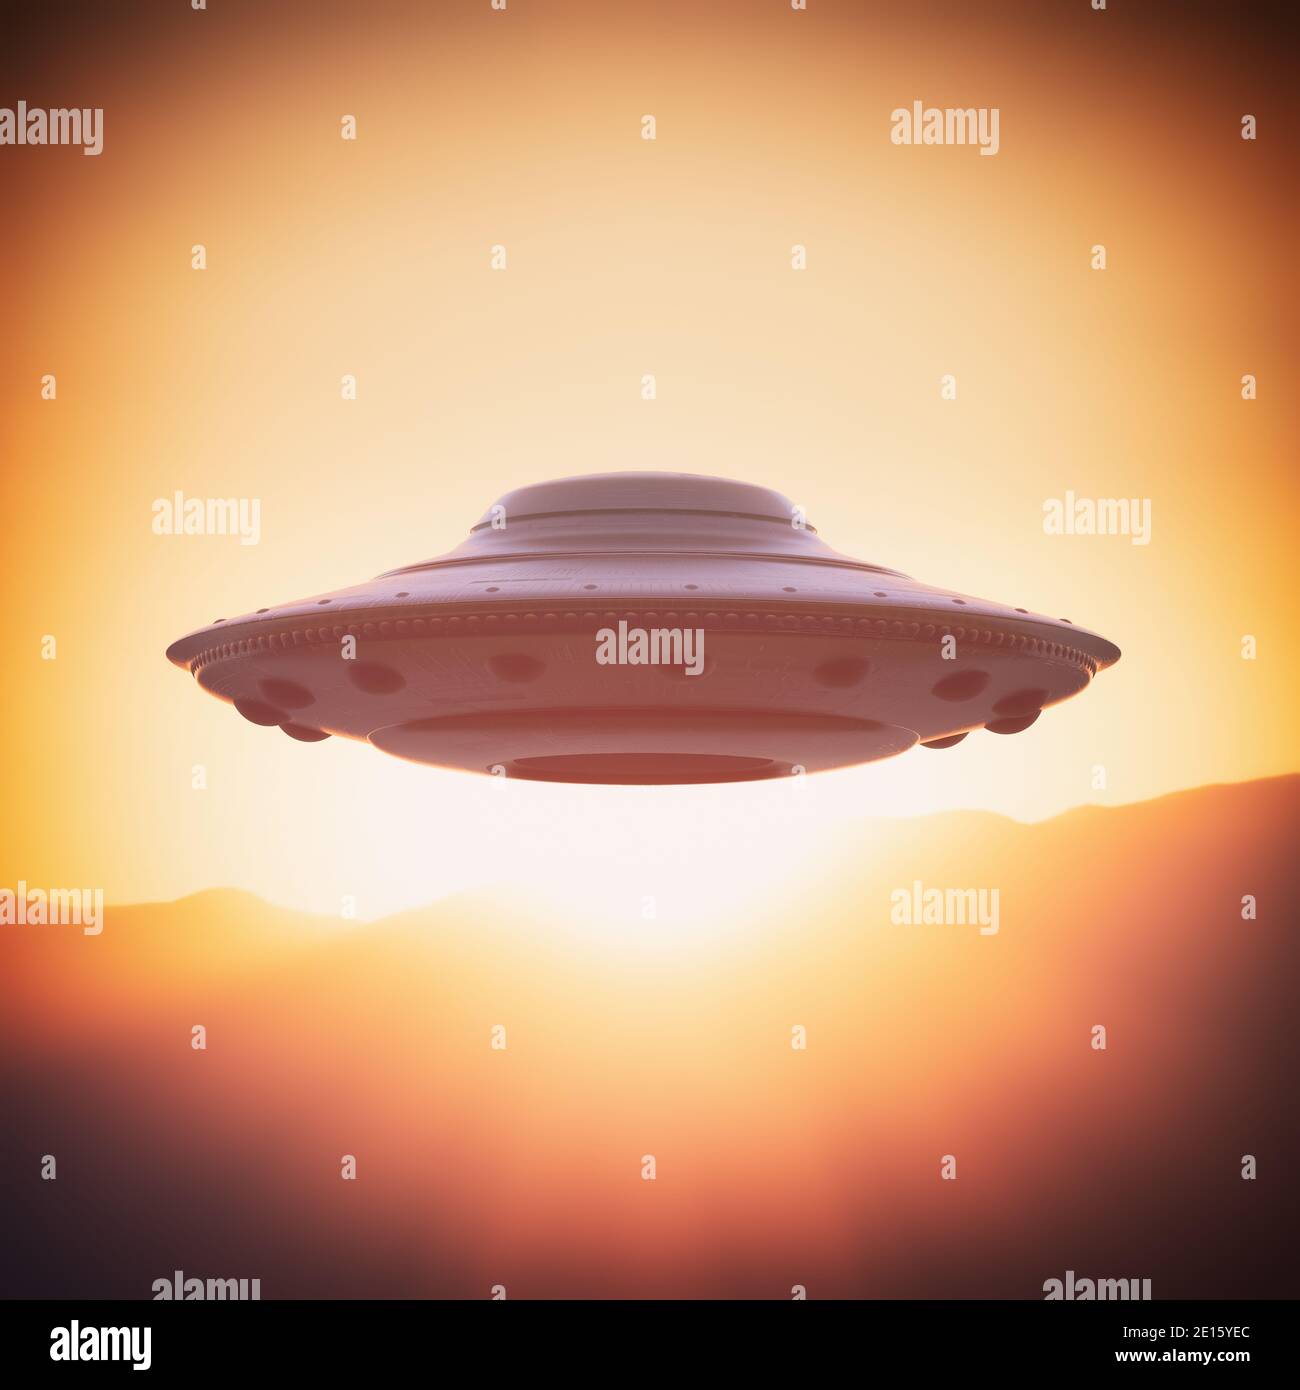 Nicht identifiziertes fliegendes Objekt, UFO. Alien Raumschiff gravitieren in den Himmel mit der Sonne hinter. 3D-Illustration, Ufologie-Konzept. Beschneidungspfad enthalten. Stockfoto